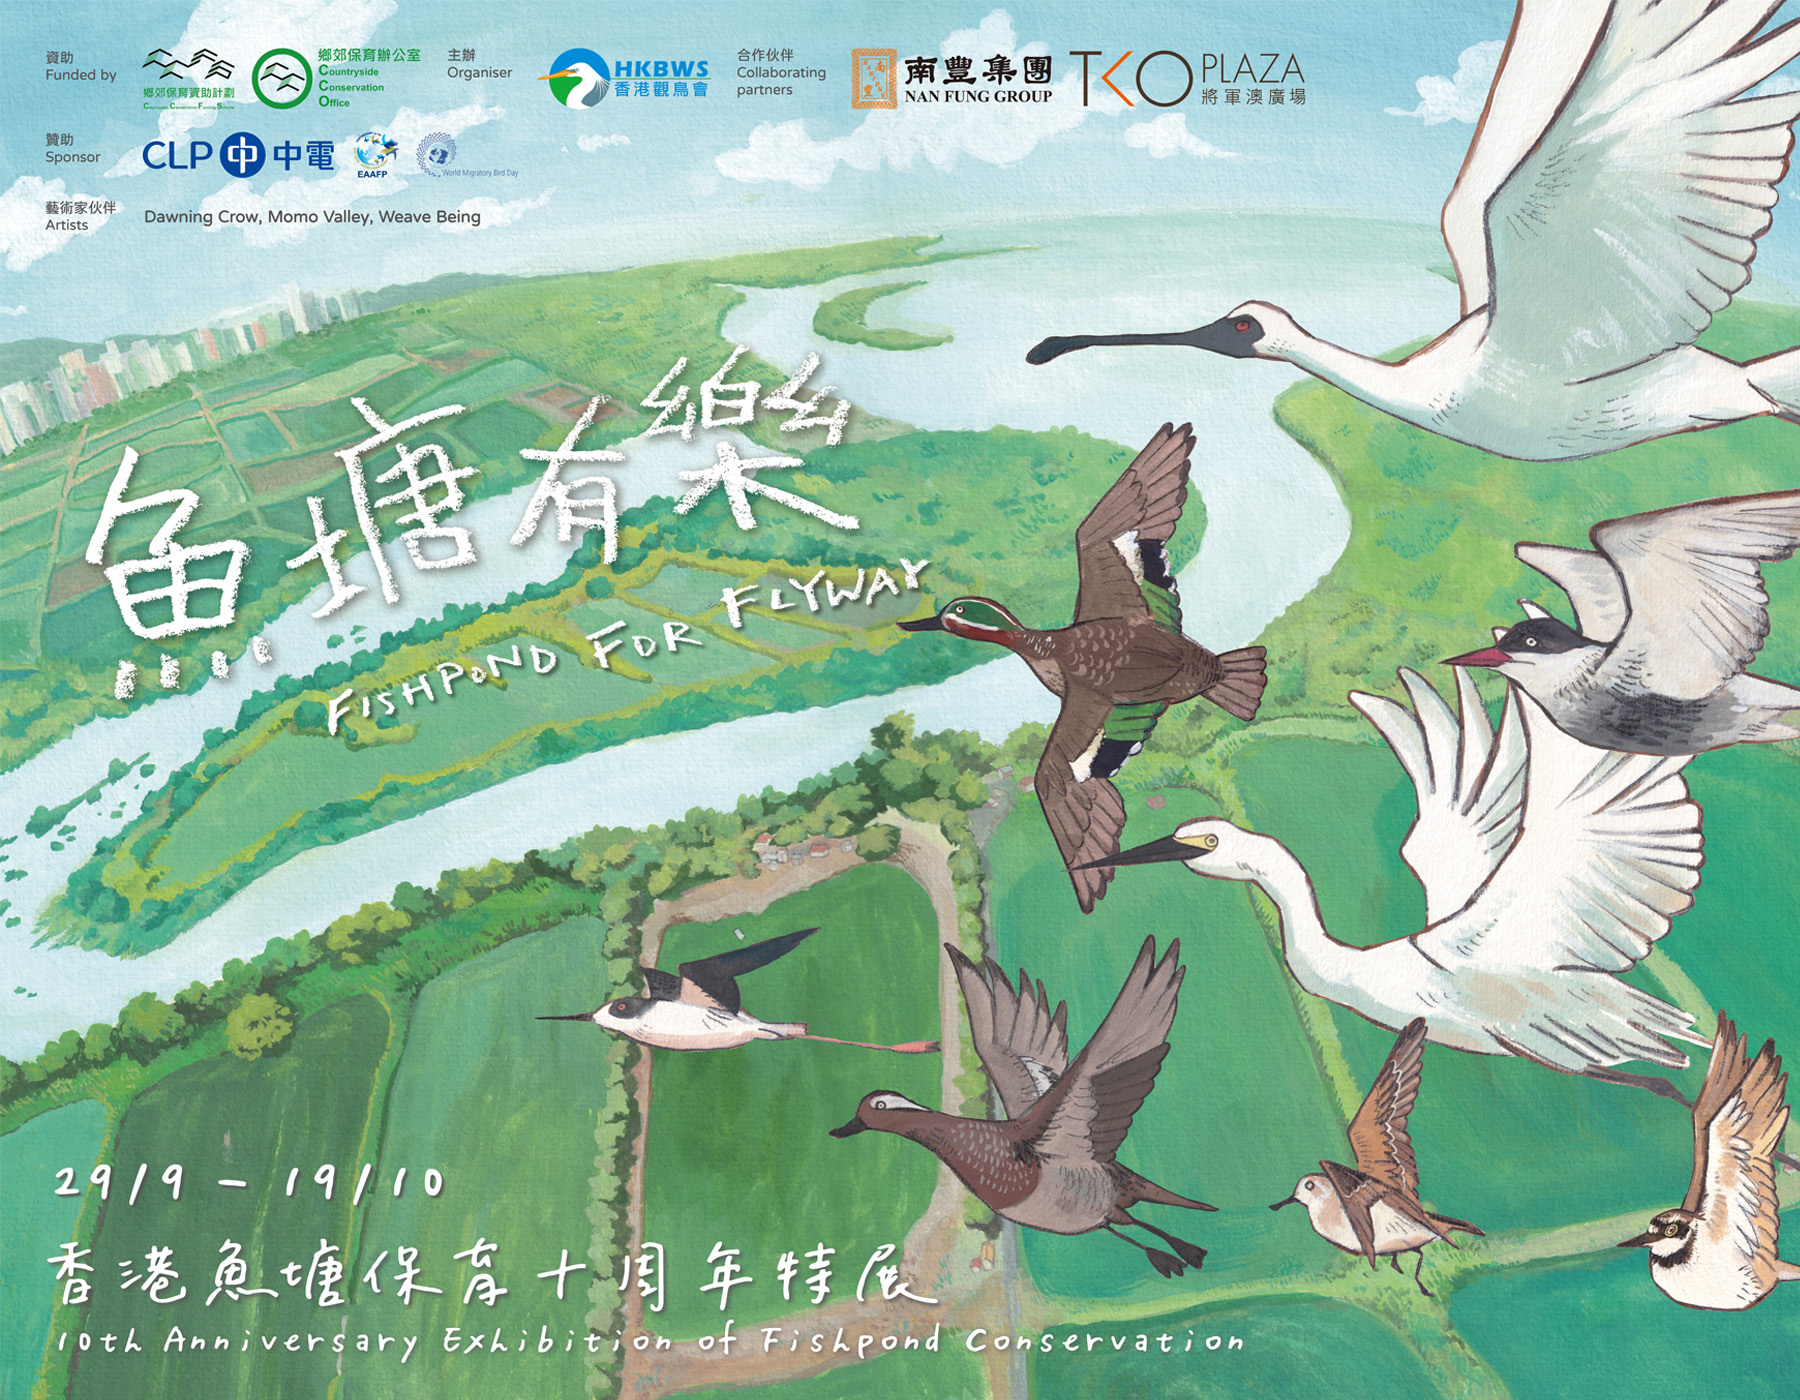 魚塘有樂 - 香港魚塘保育十周年特展